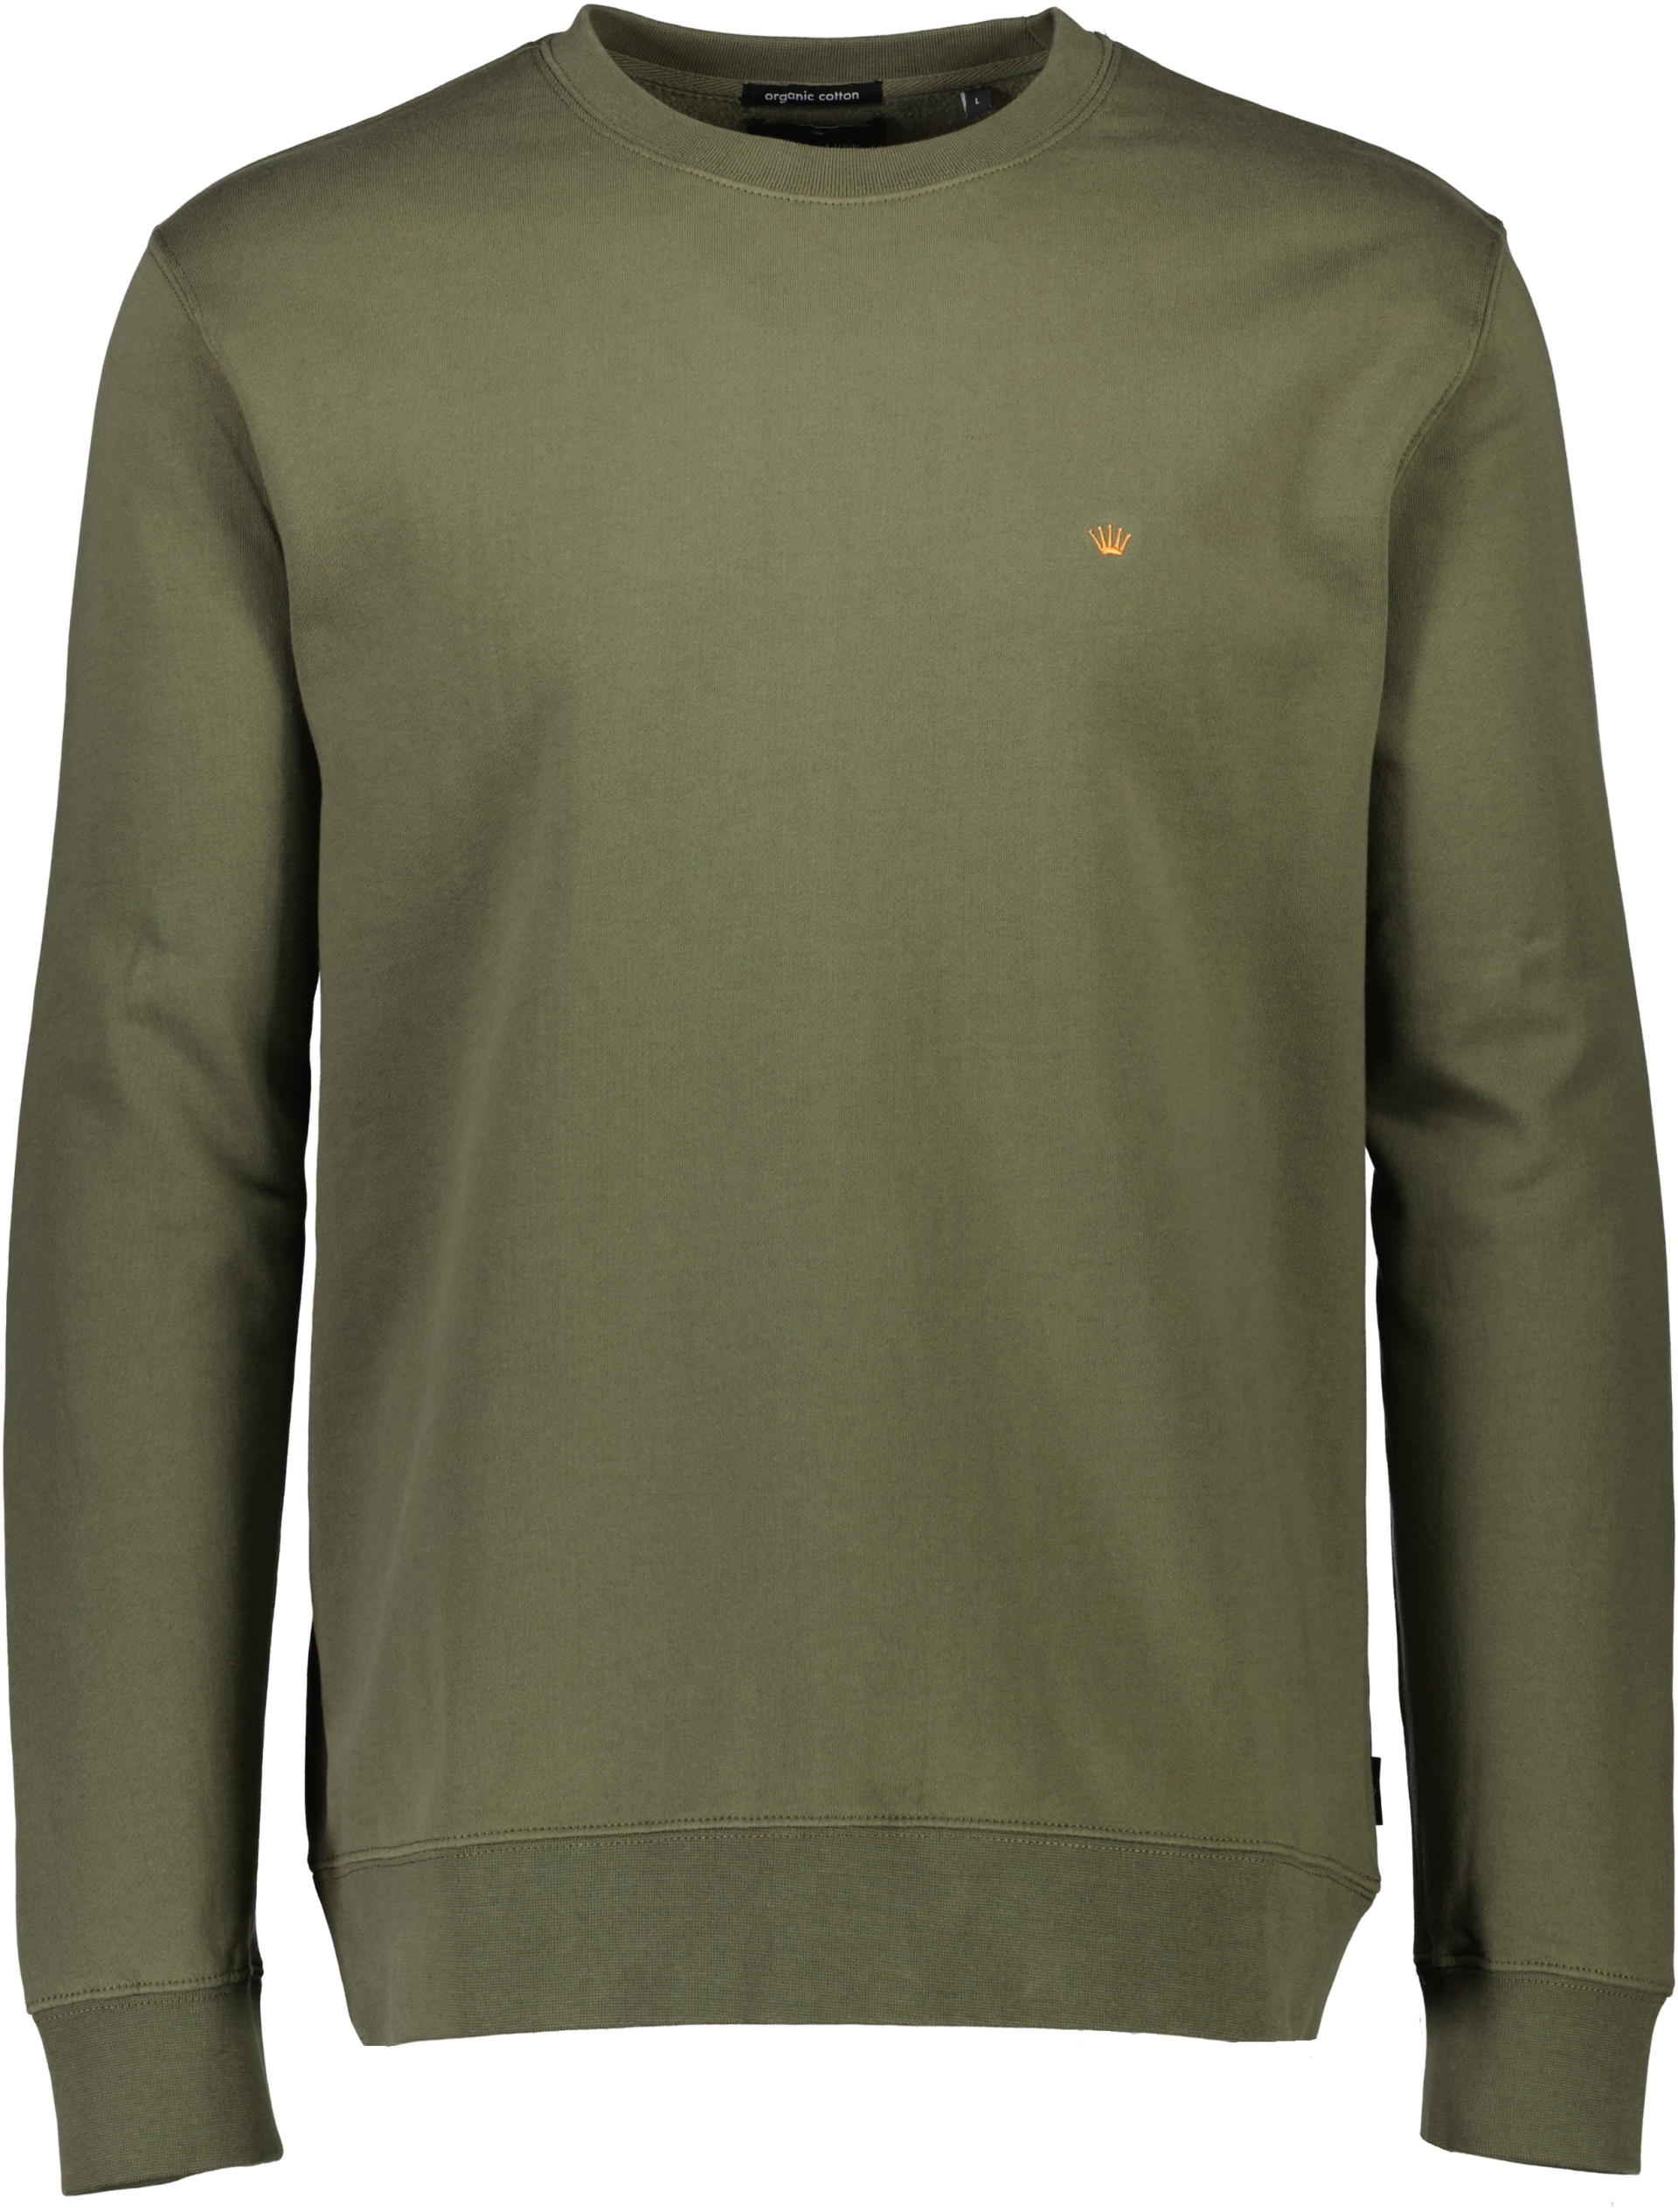 Junk de Luxe Sweatshirt grøn / army